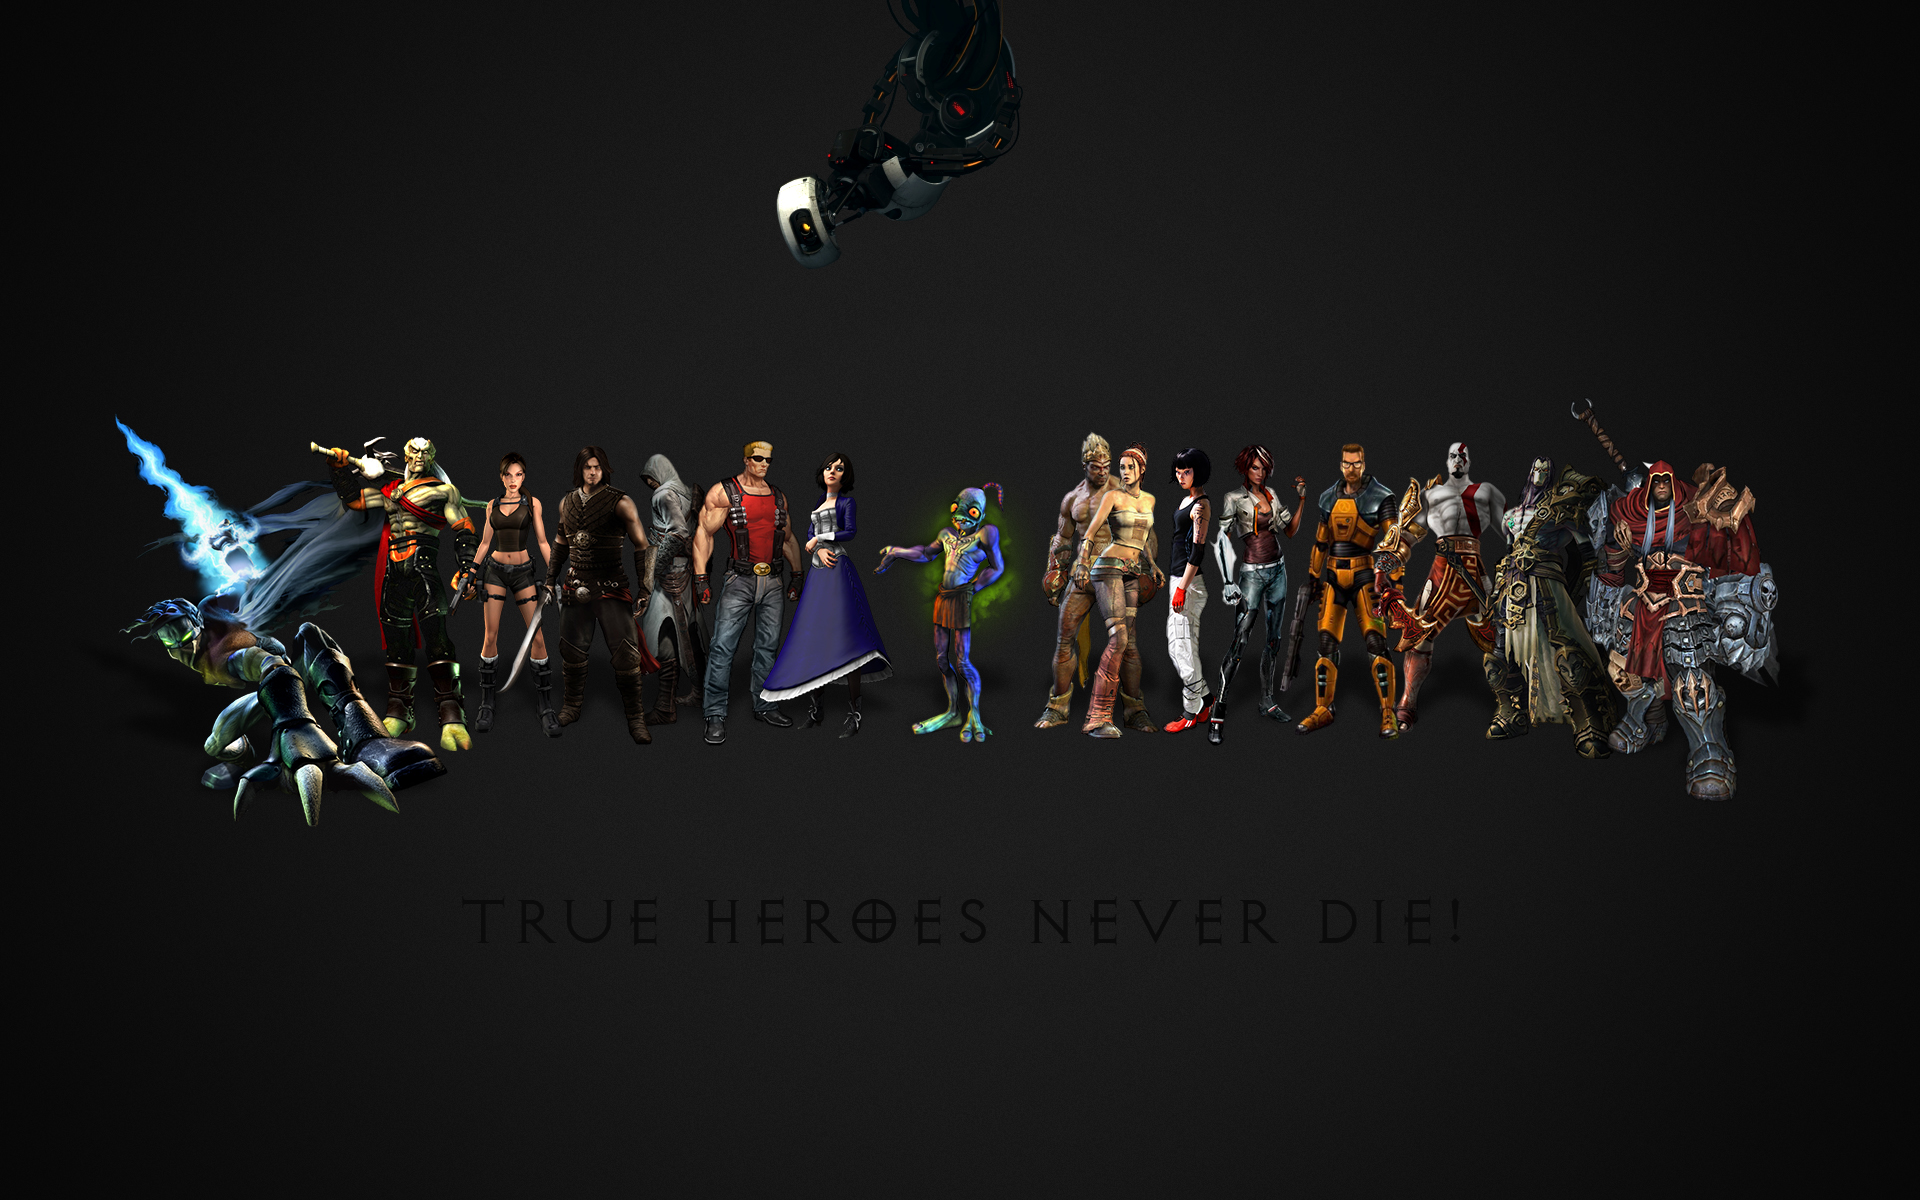 True heroes never die! by Phileas100 on DeviantArt